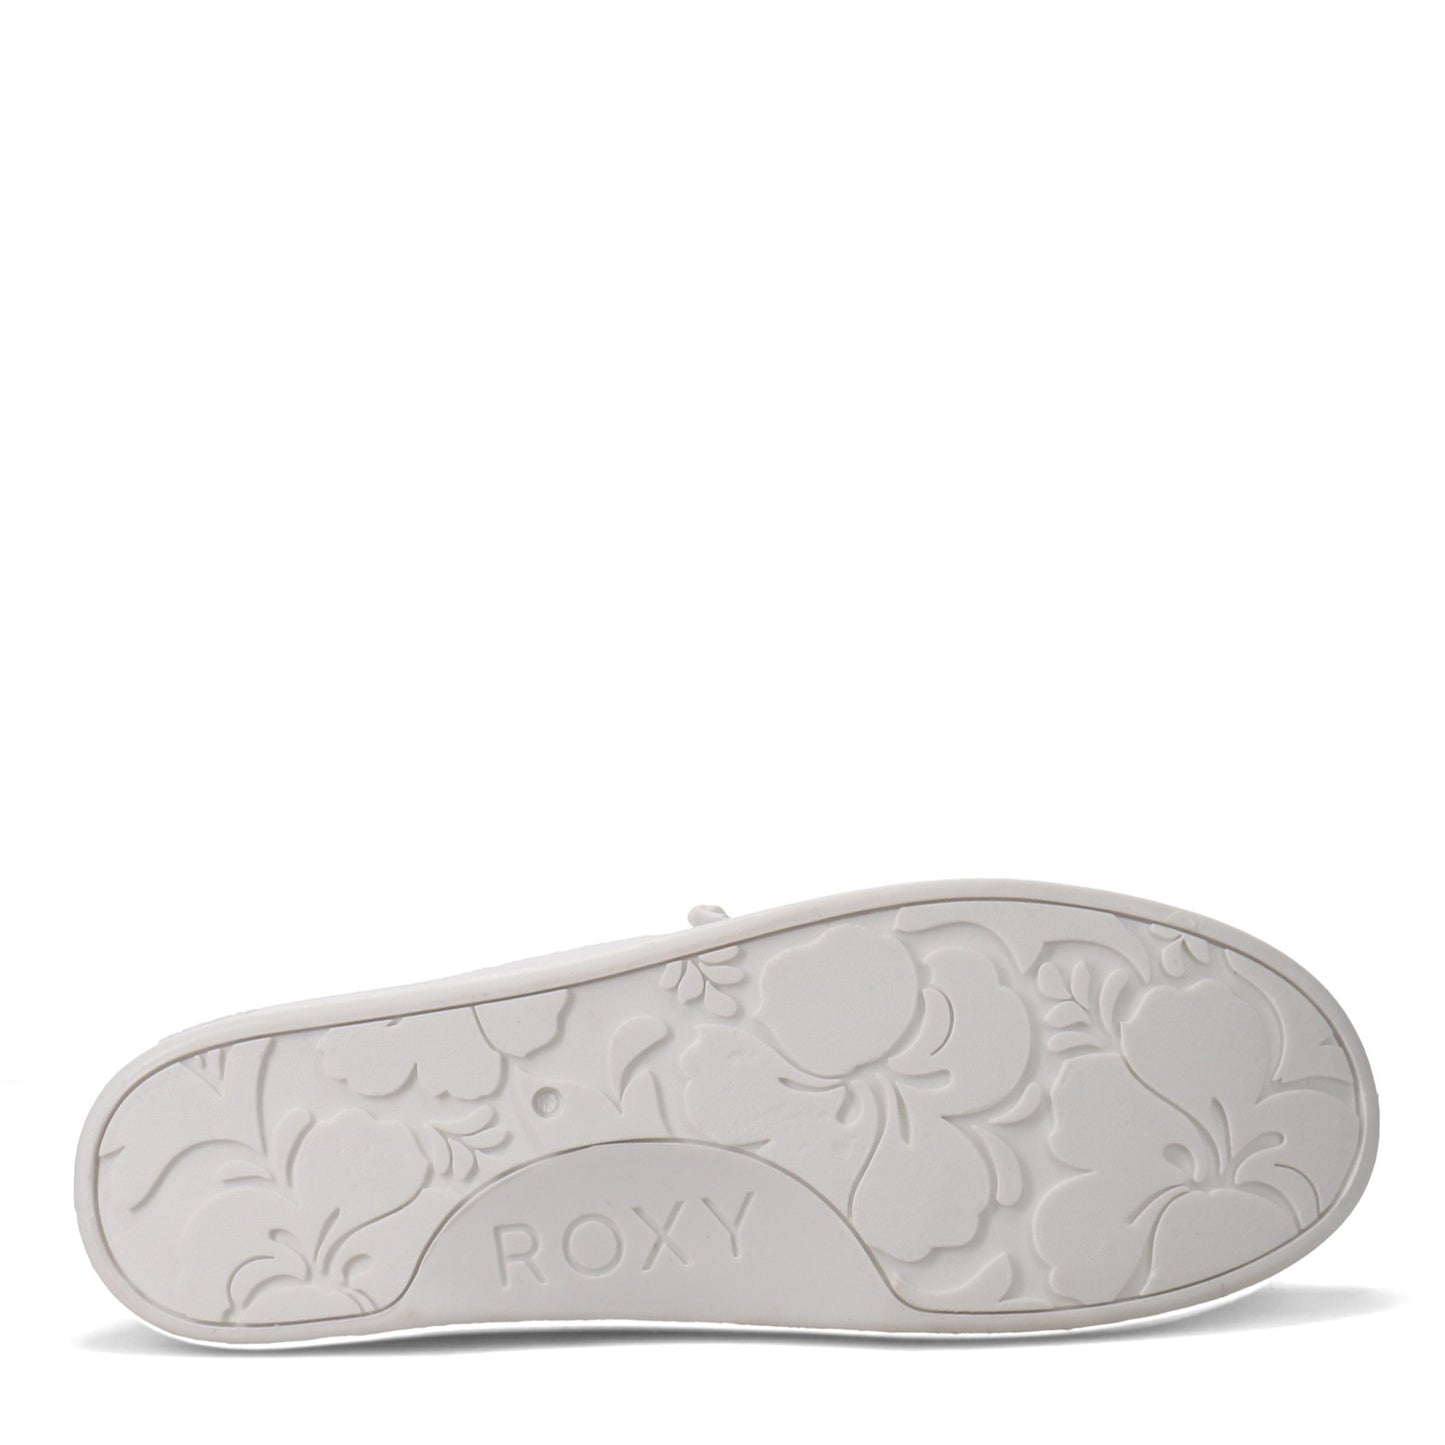 Peltz Shoes  Women's Roxy Bayshore Sneaker WHITE ARJS600418-WHT